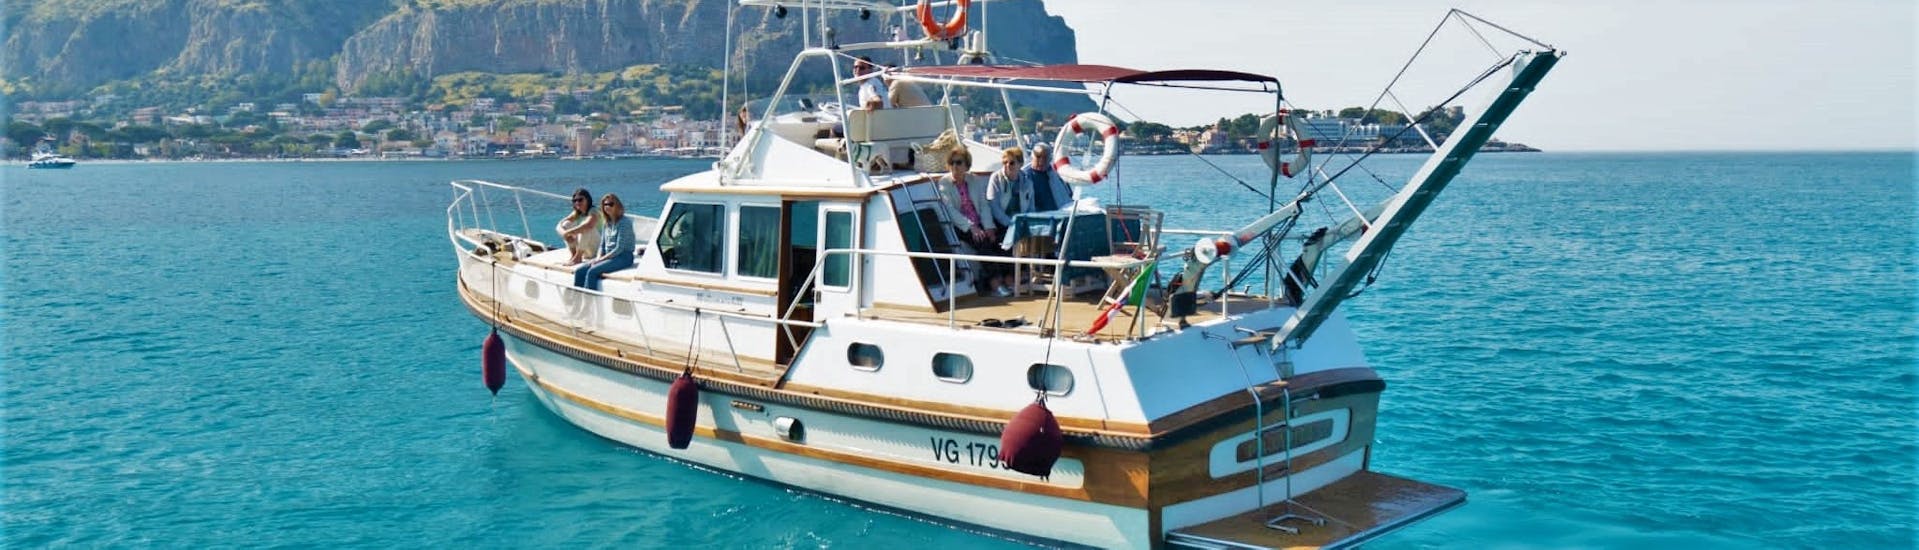 La barca utilizzata da Seica Boat durante la gita in barca da Palermo alla spiaggia di Mondello con aperitivo.